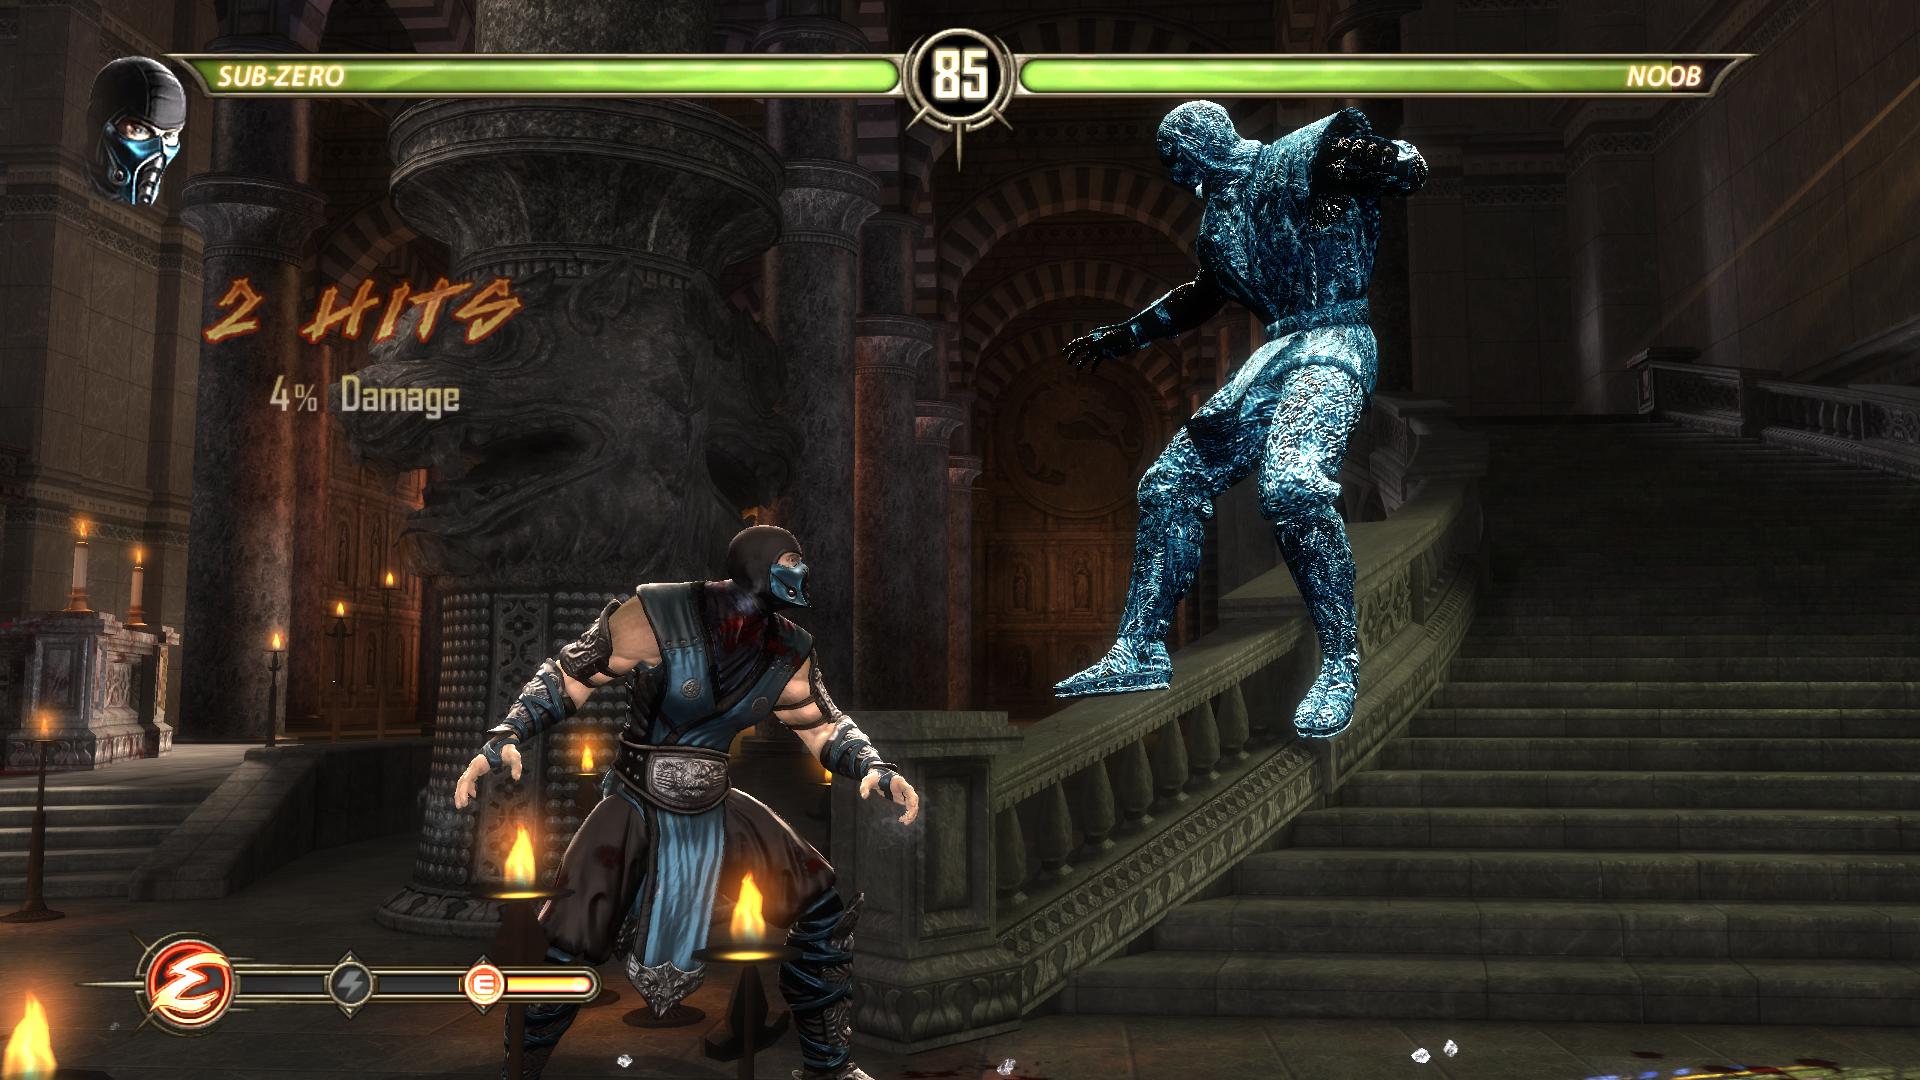 Вспомним прошлое с Mortal Kombat 9 для PC - "Смертельная битва" .